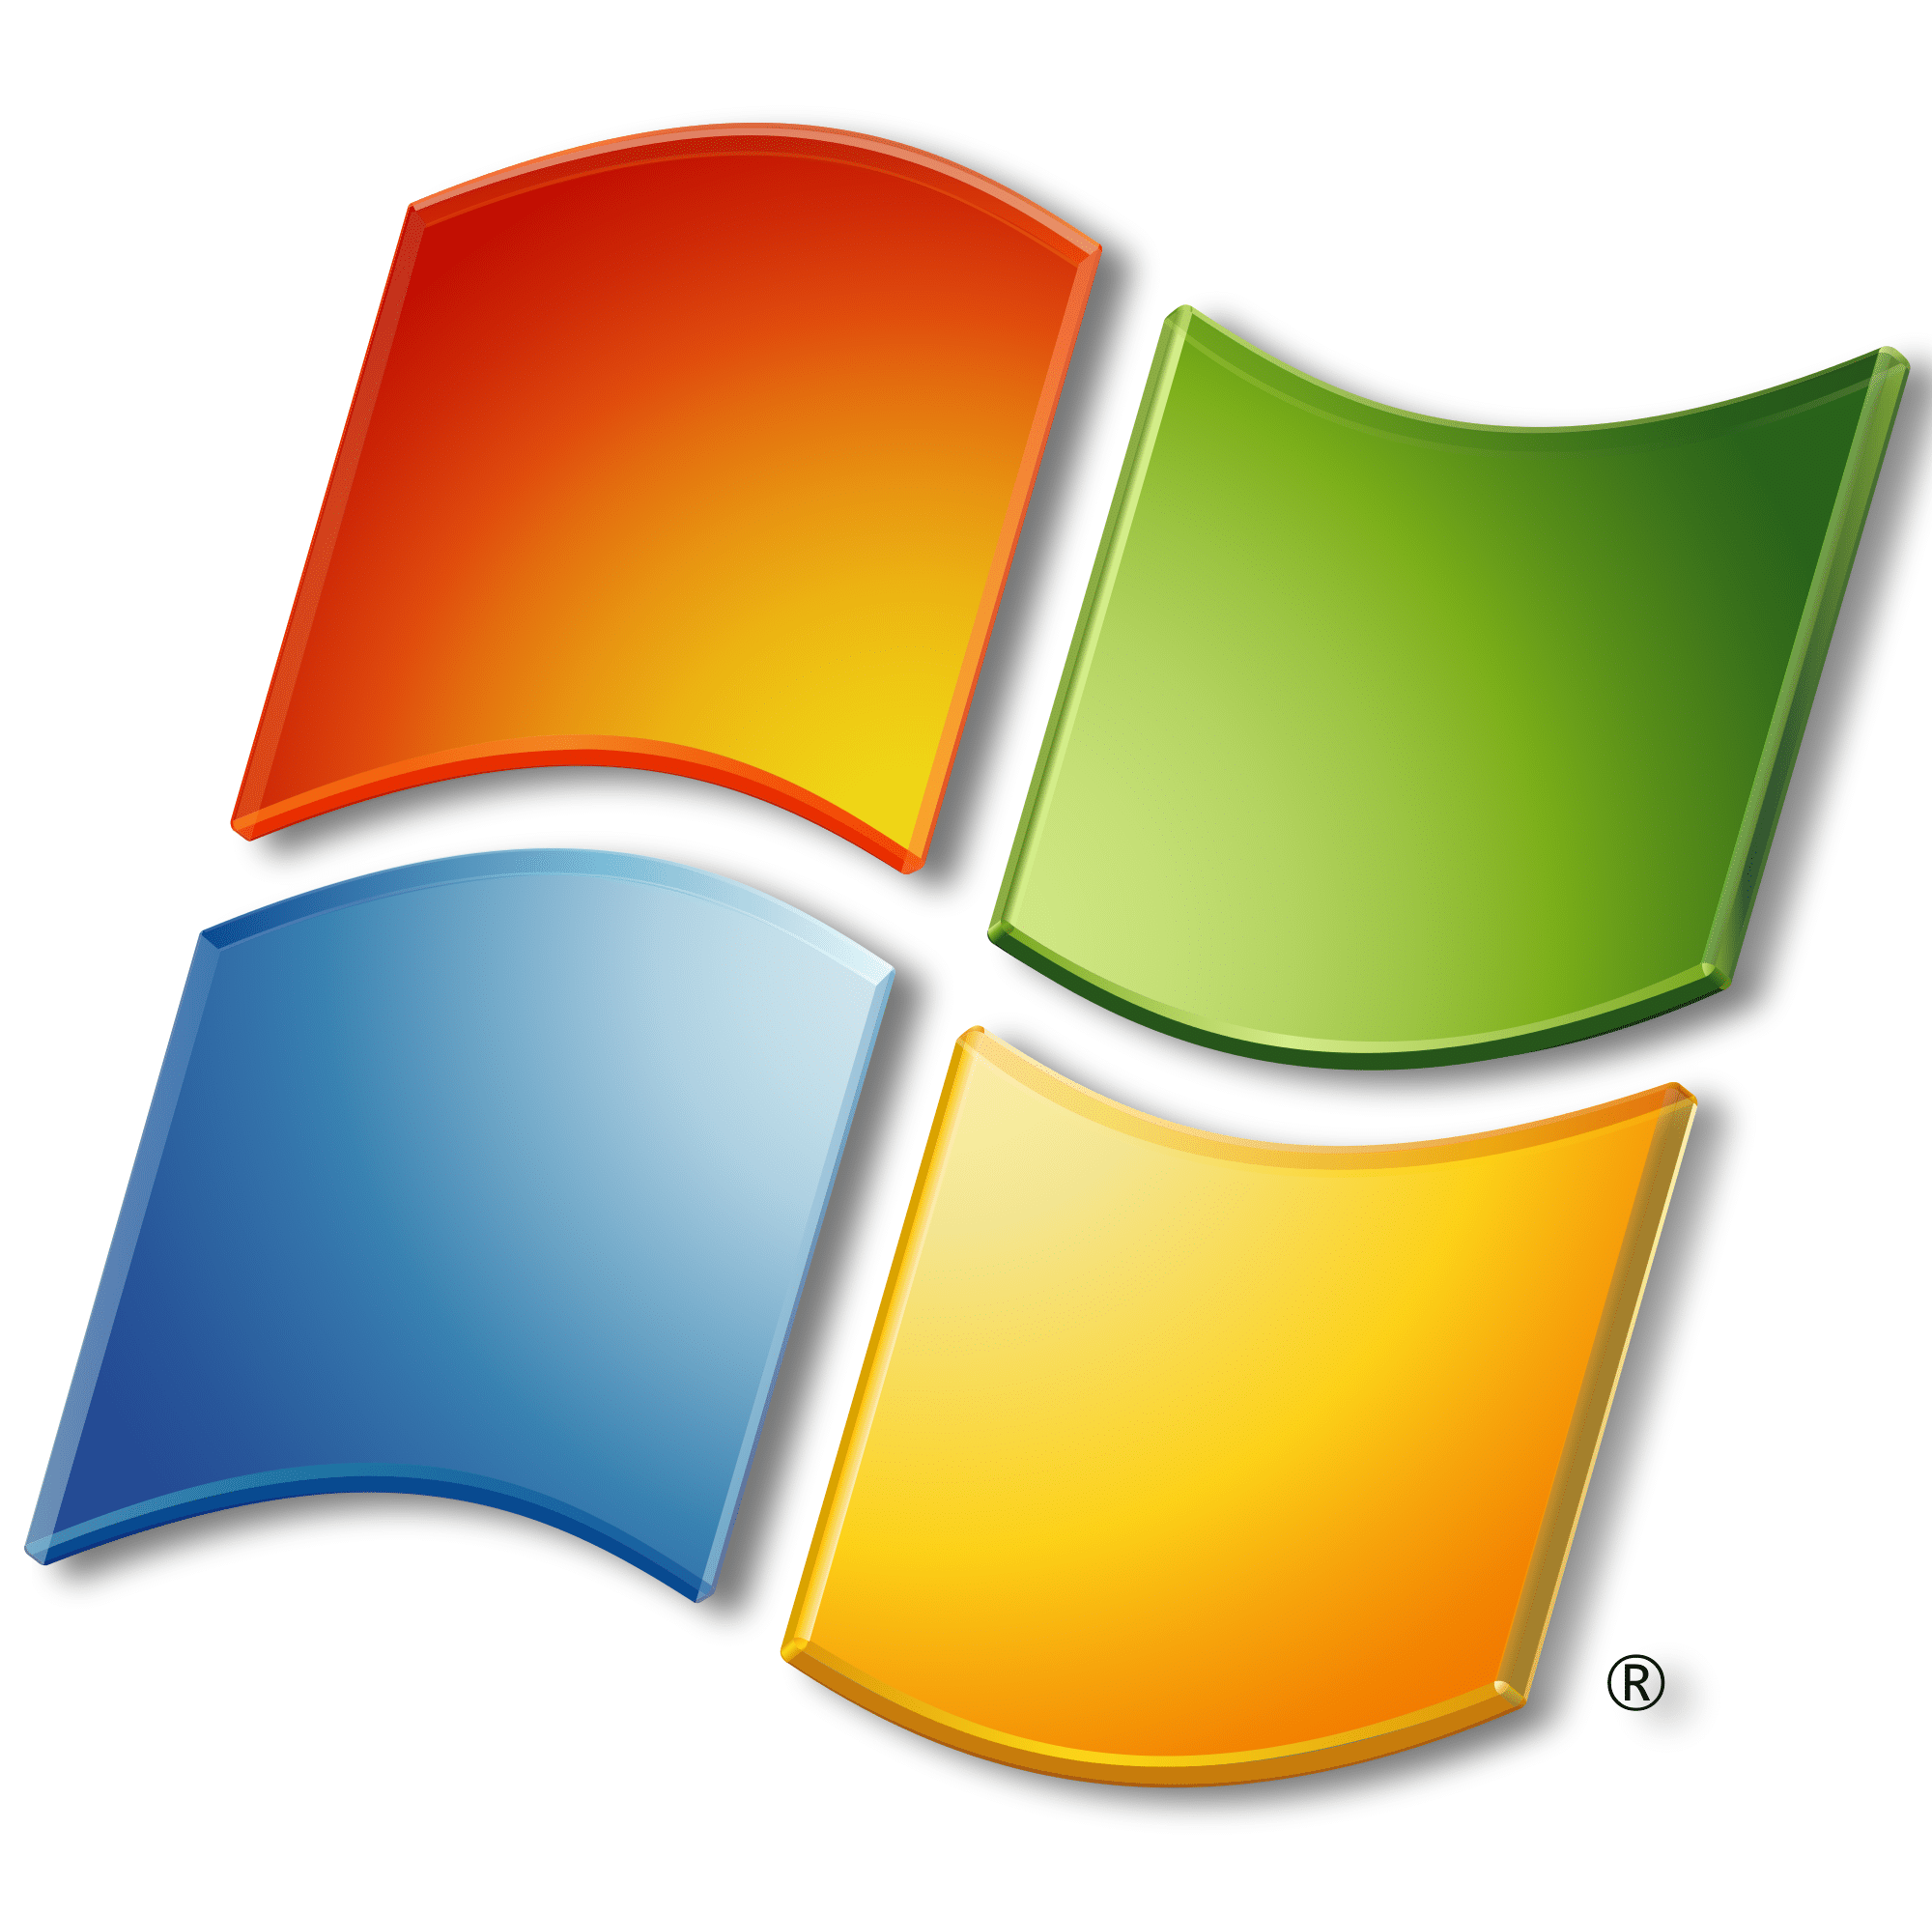 Windows 11 Neuer Microsoft Store Startet Erfolgreich Pc Welt - Vrogue